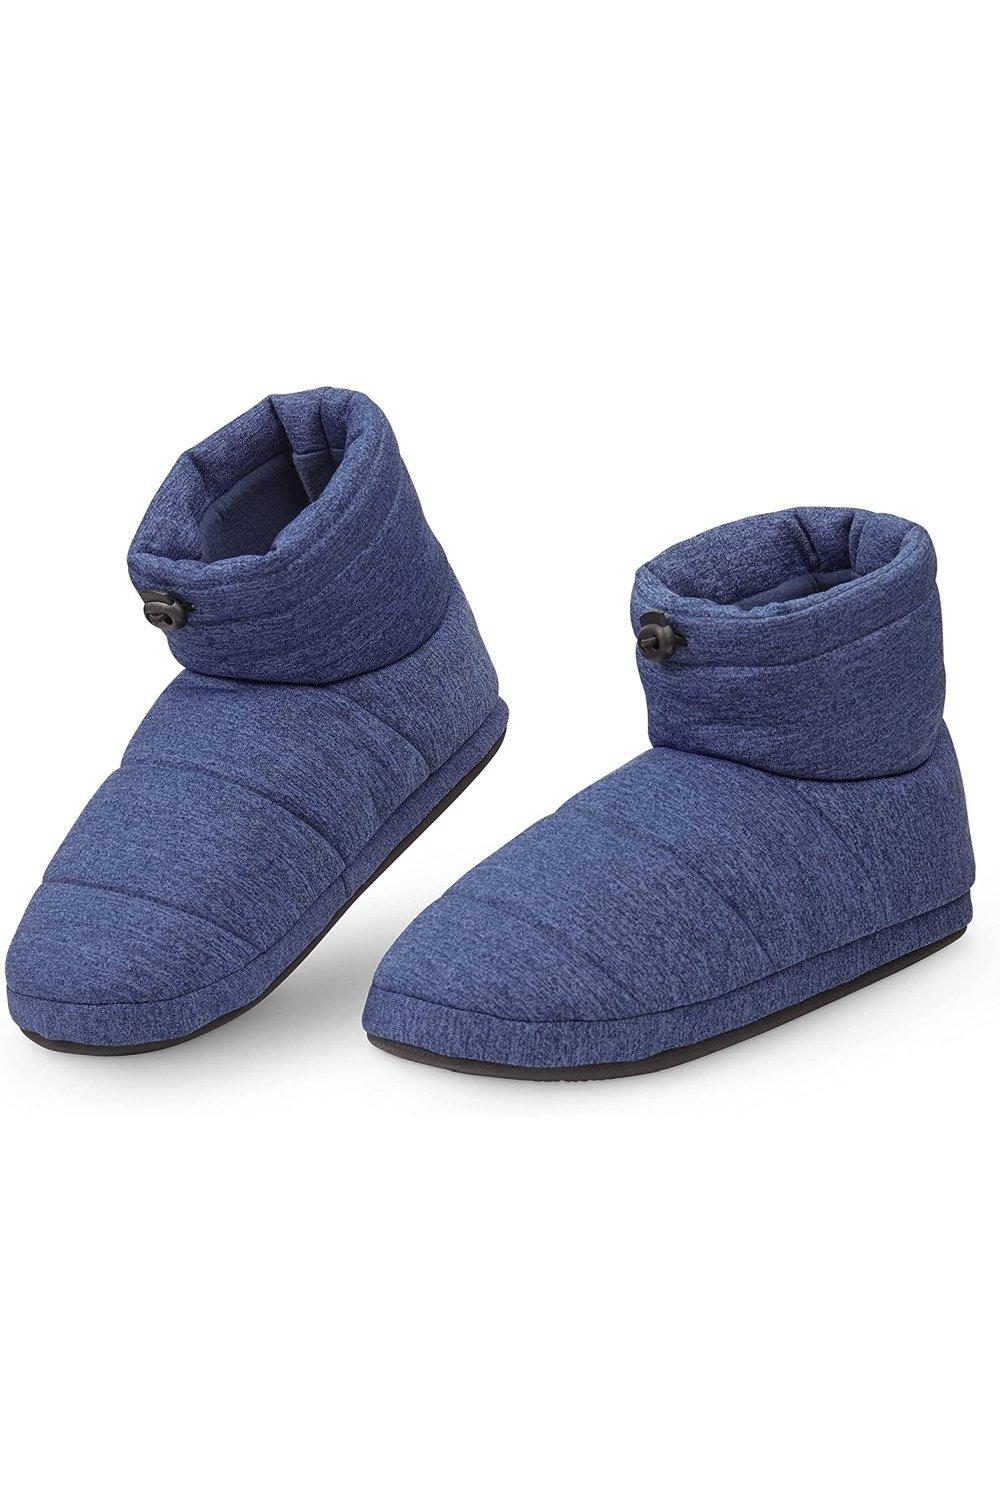 Тапочки-сапожки Dunlop, синий хуг вероника модные домашние тапочки теплые и уютные модели